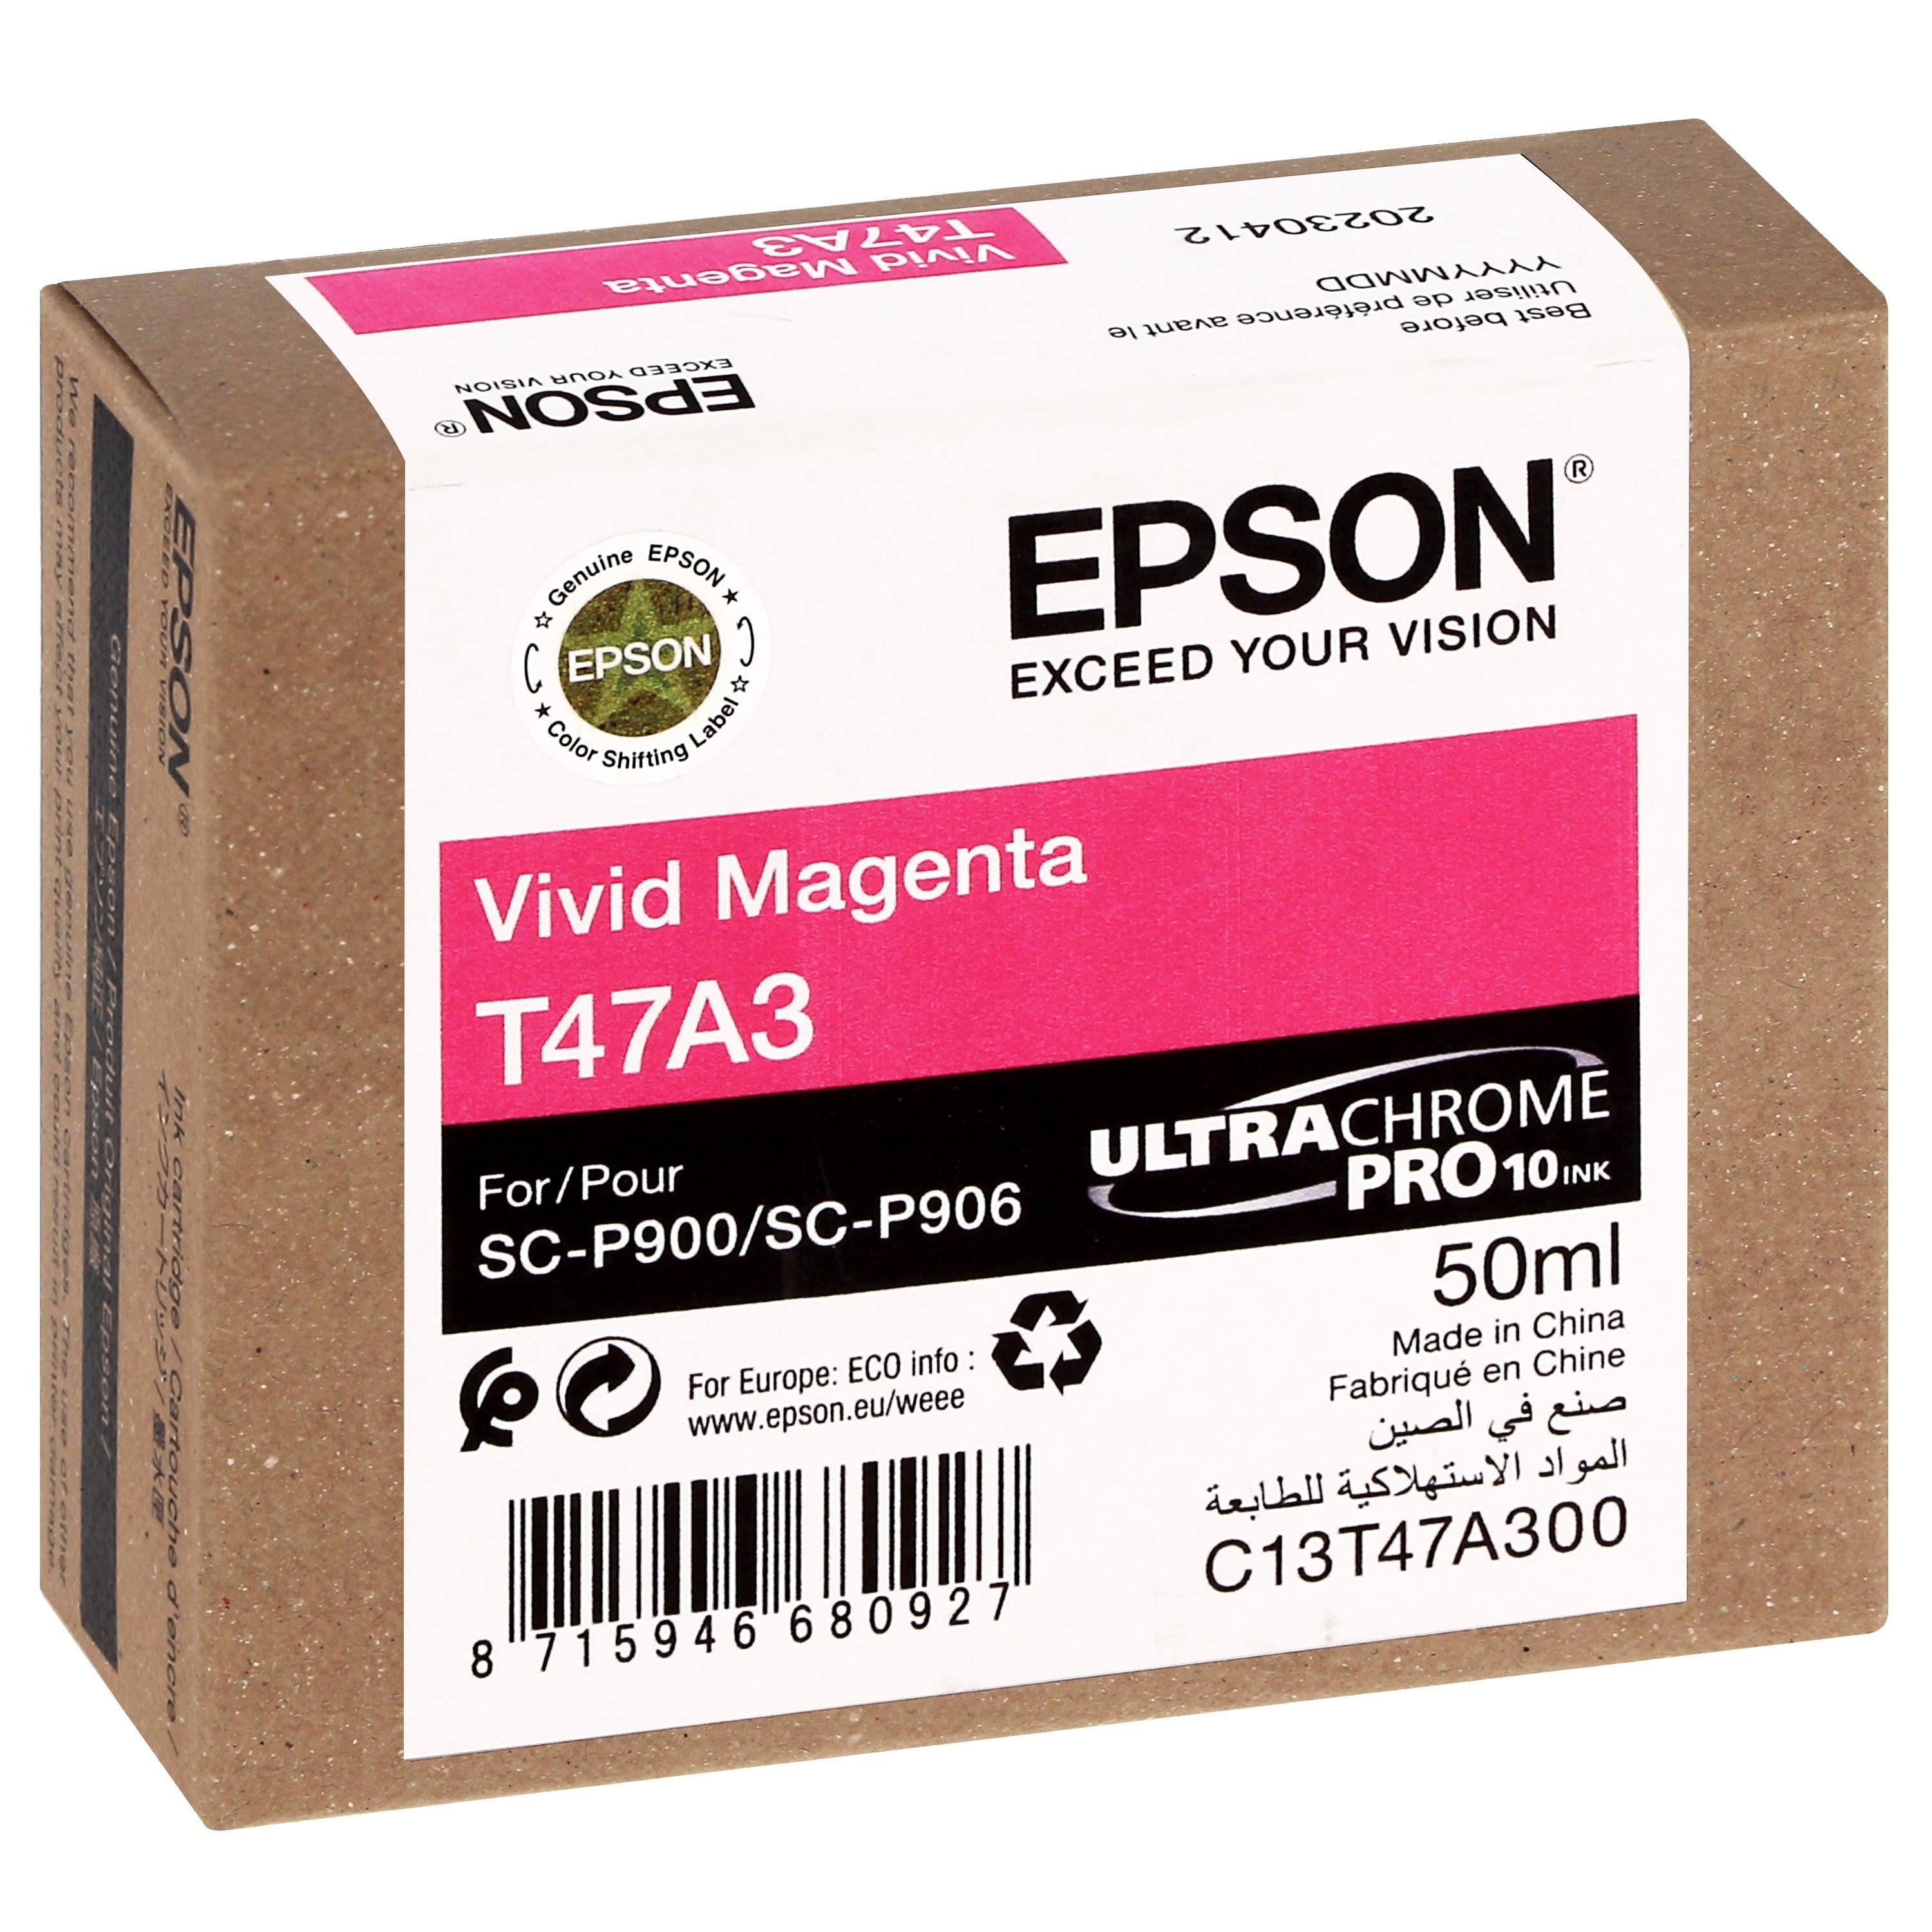 EPSON - Cartouche d'encre traceur UltraChrome Pro 10 SC-P900 - Vivid magenta - 50ml - T47A3